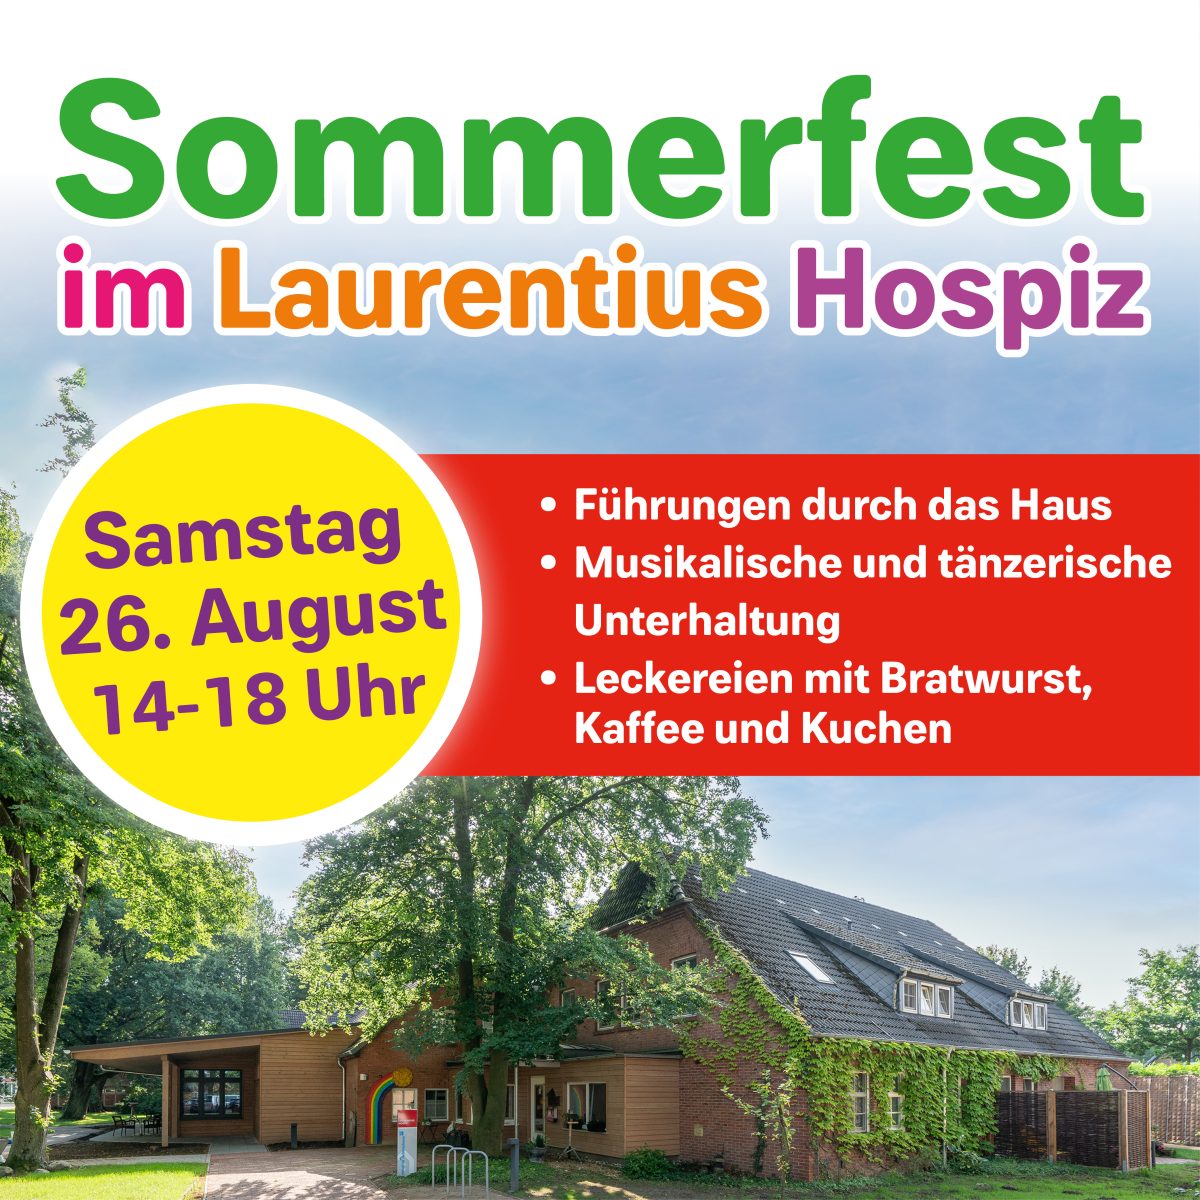 Sommerfest im Laurentius Hospiz